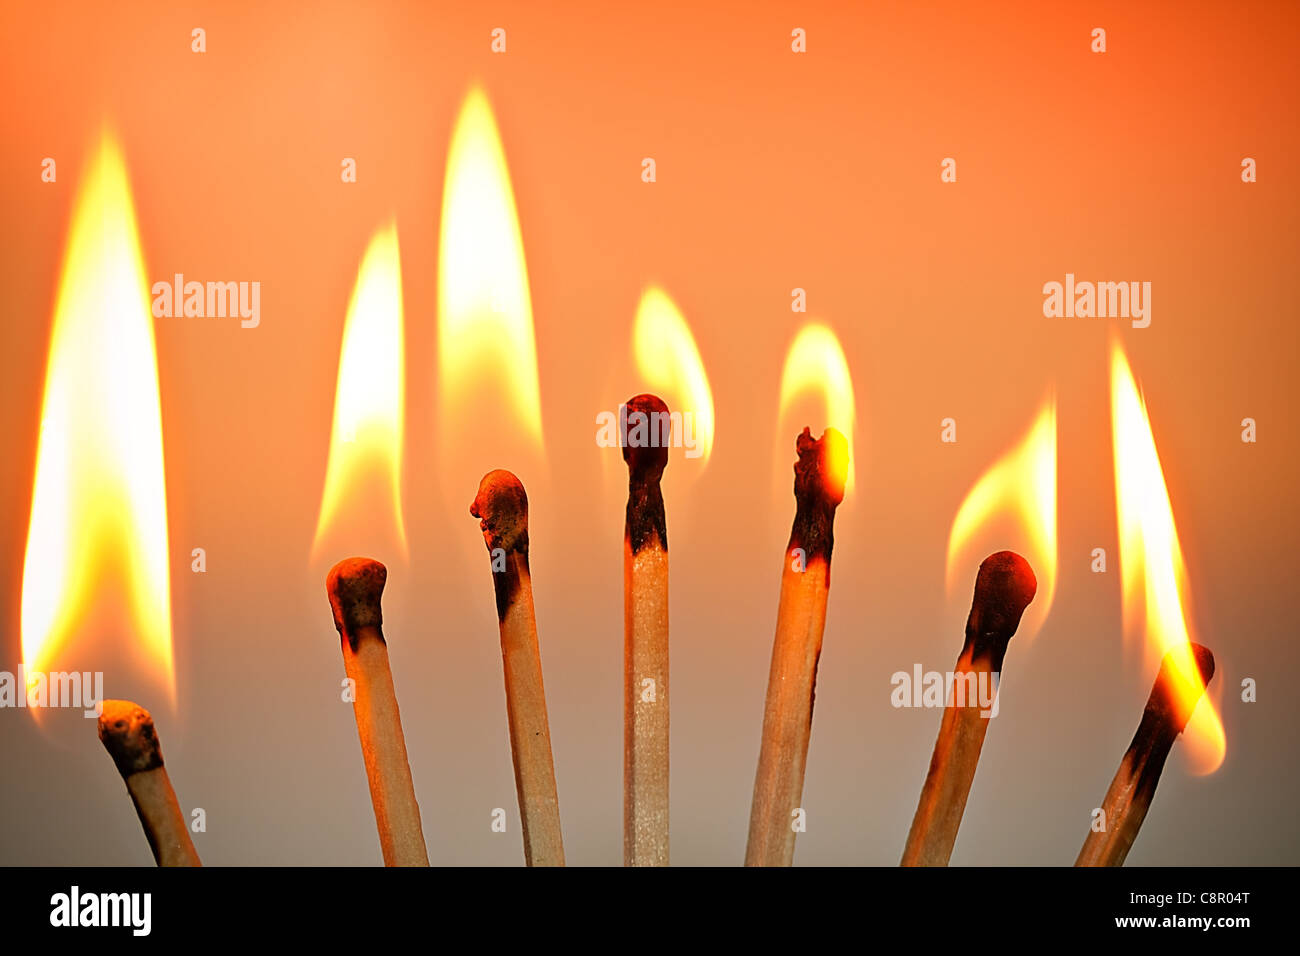 Burning matches Stock Photo